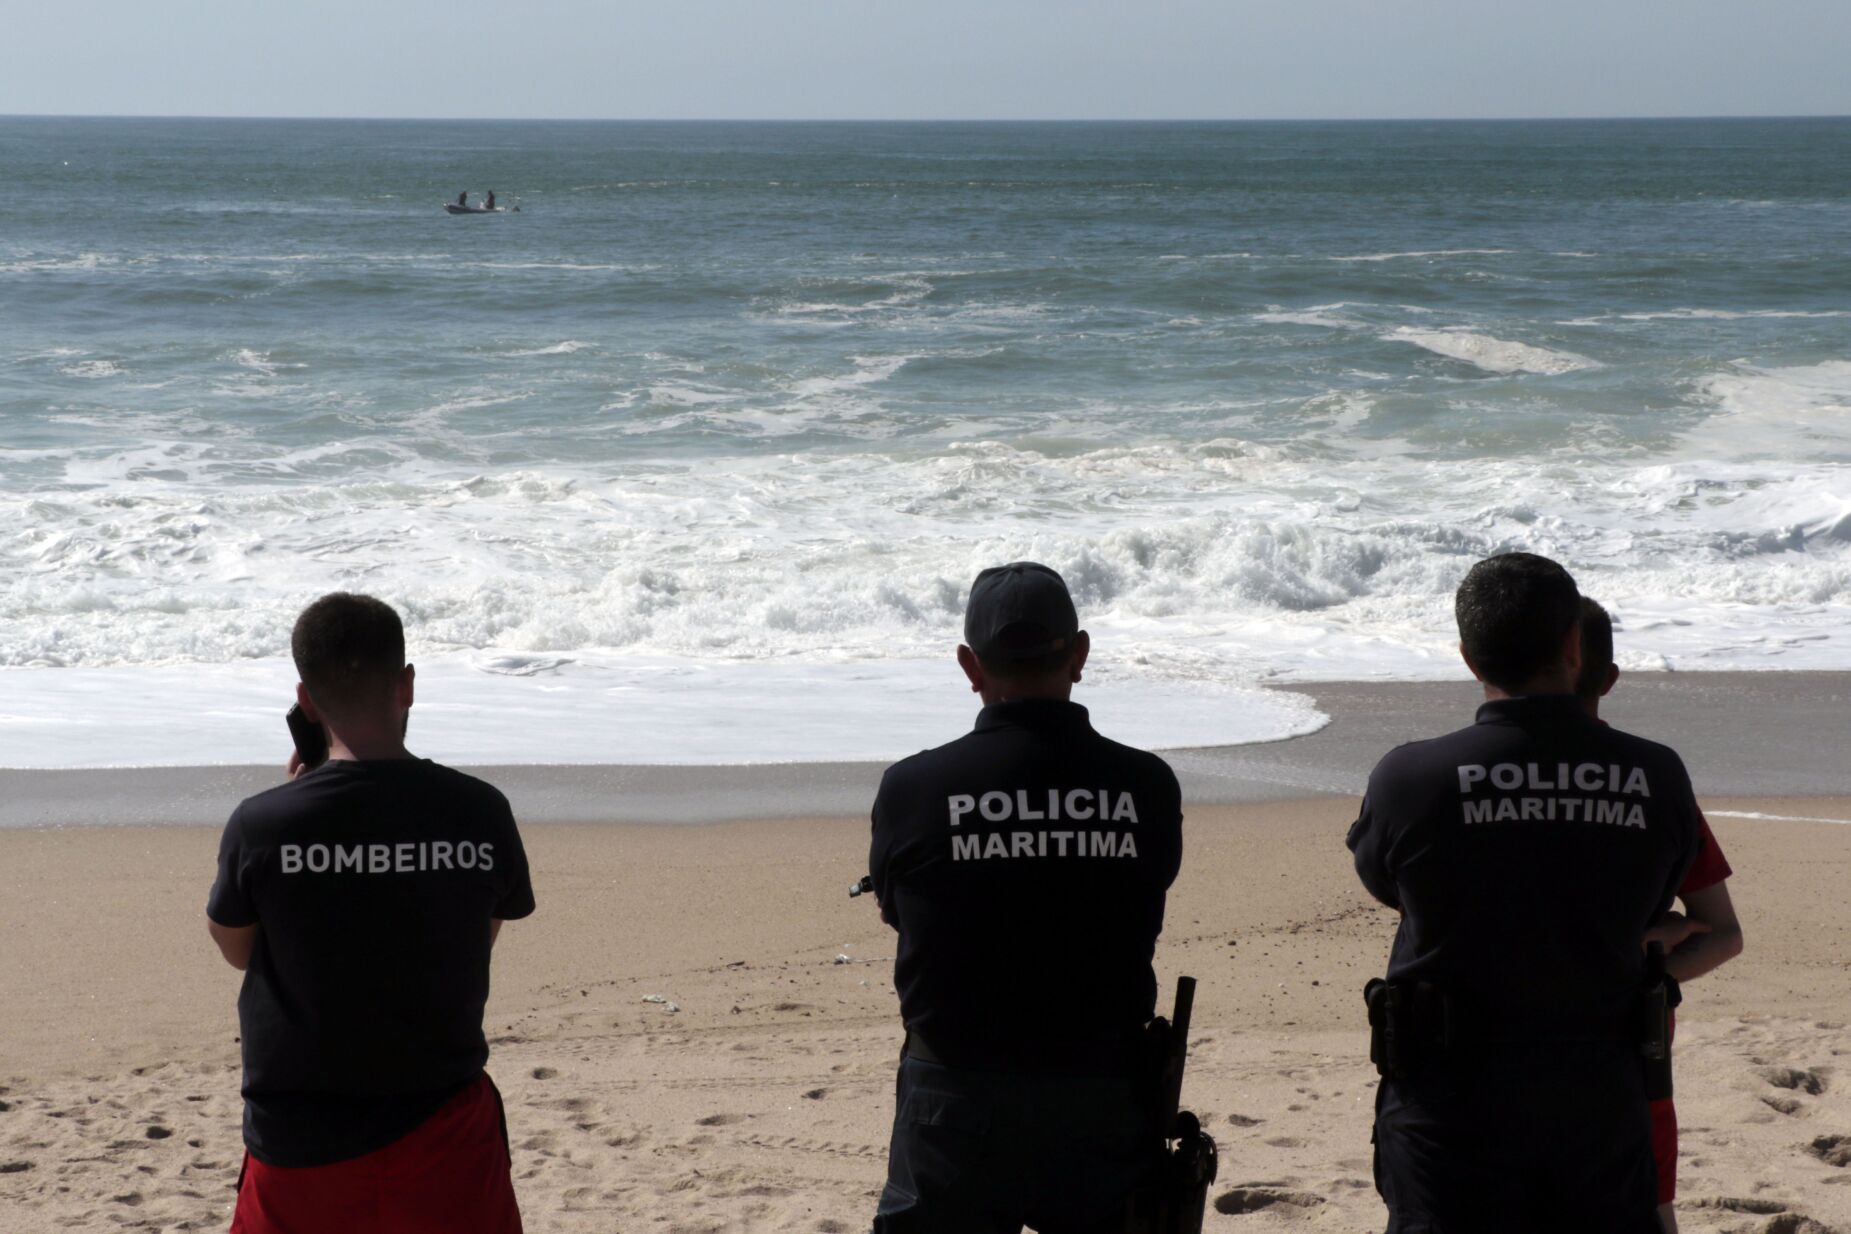 "Ao que tudo indica", corpo encontrado em Canide Sul será de jovem desaparecido no mar